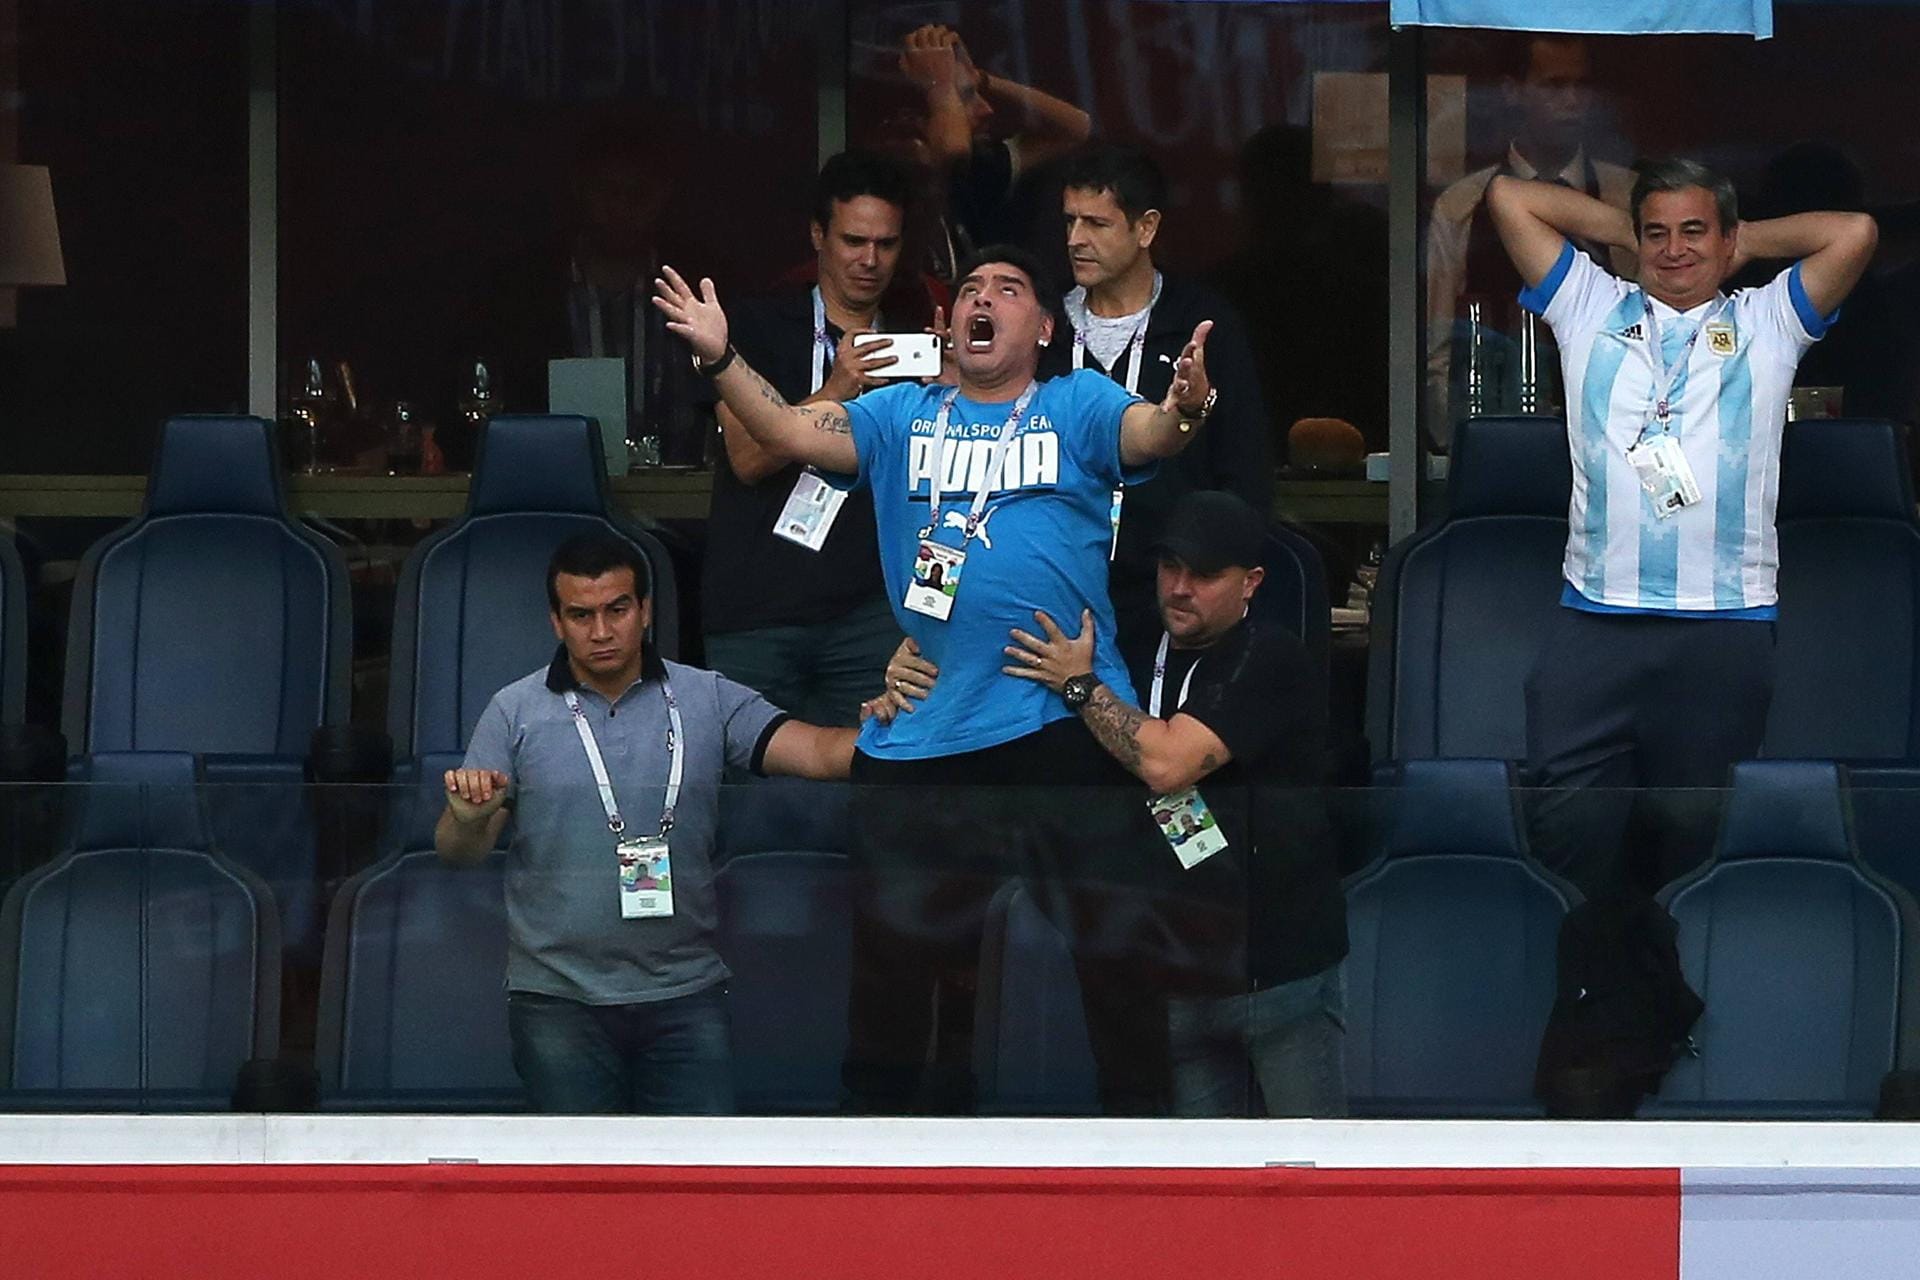 Erstes Tor für die Argentinier: Maradona wird während er jubelt festgehalten.